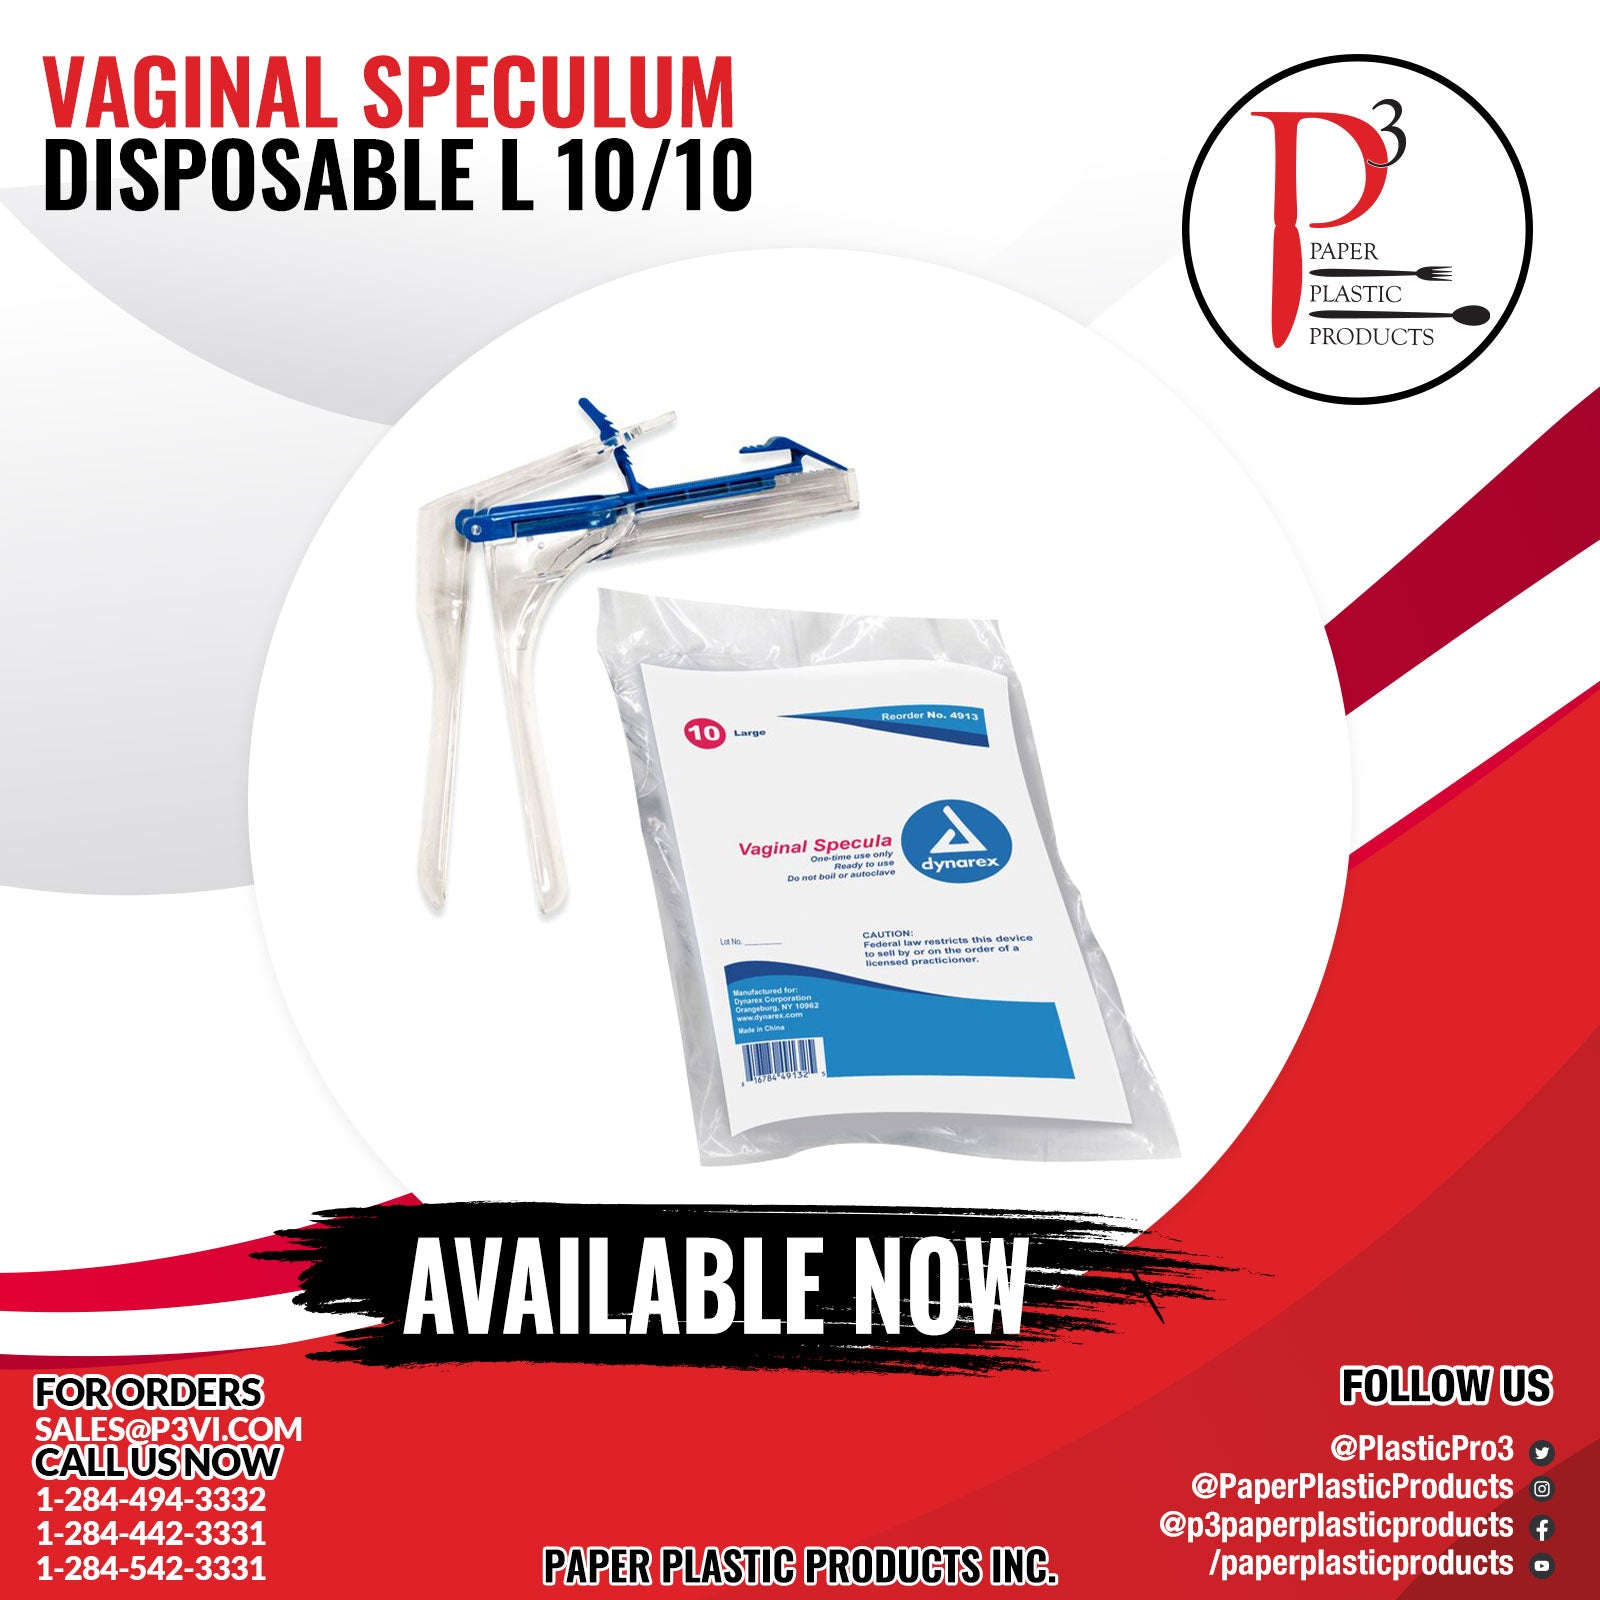 Vaginal Speculum Disposable L 1/10/10